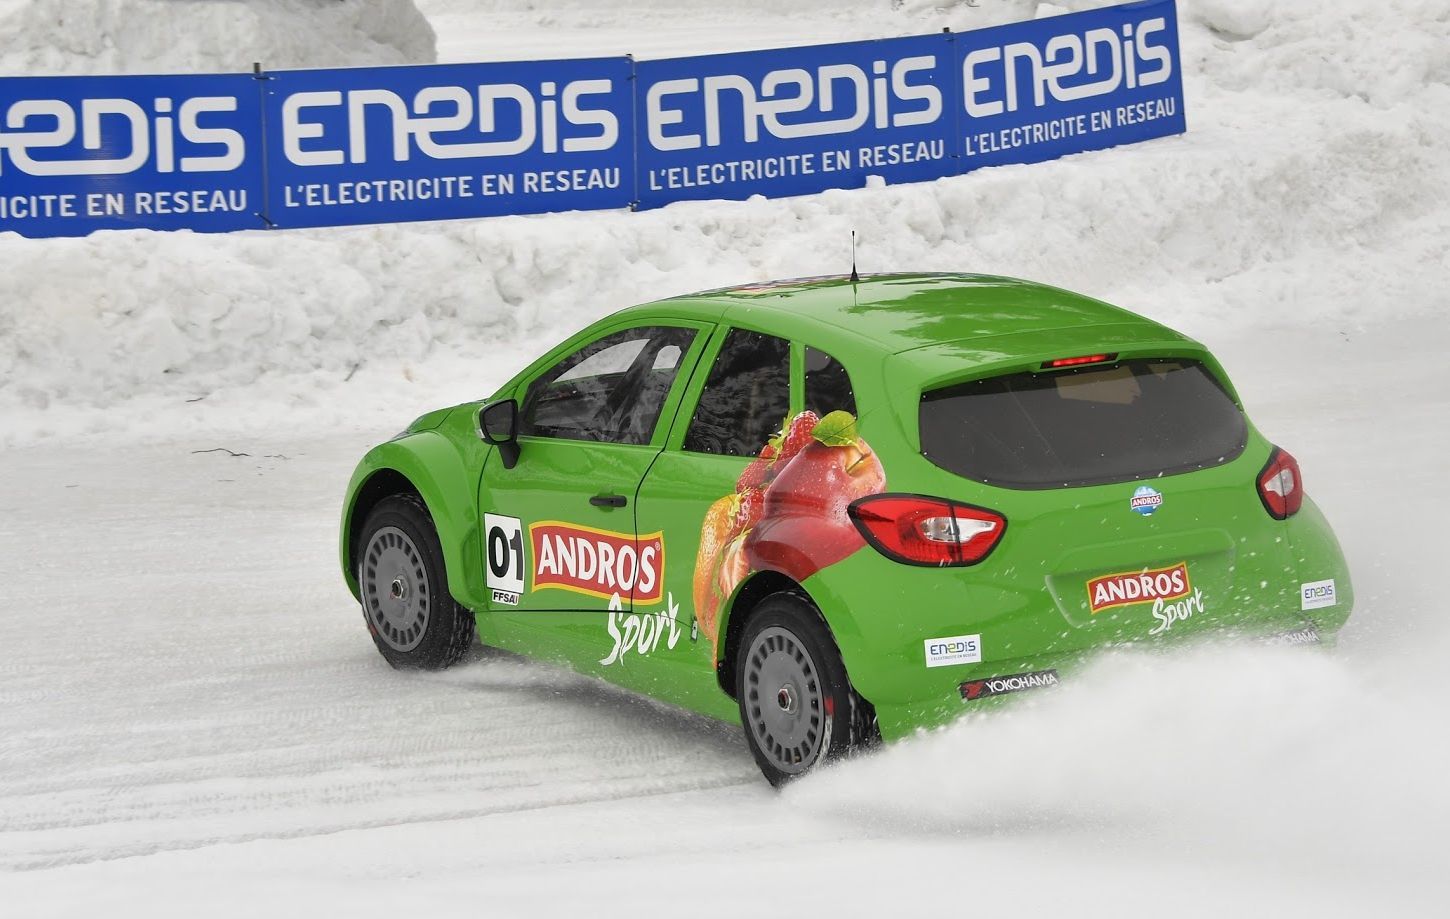 Andros sport 01, la nouvelle fée électrique qui fait chanter la glace